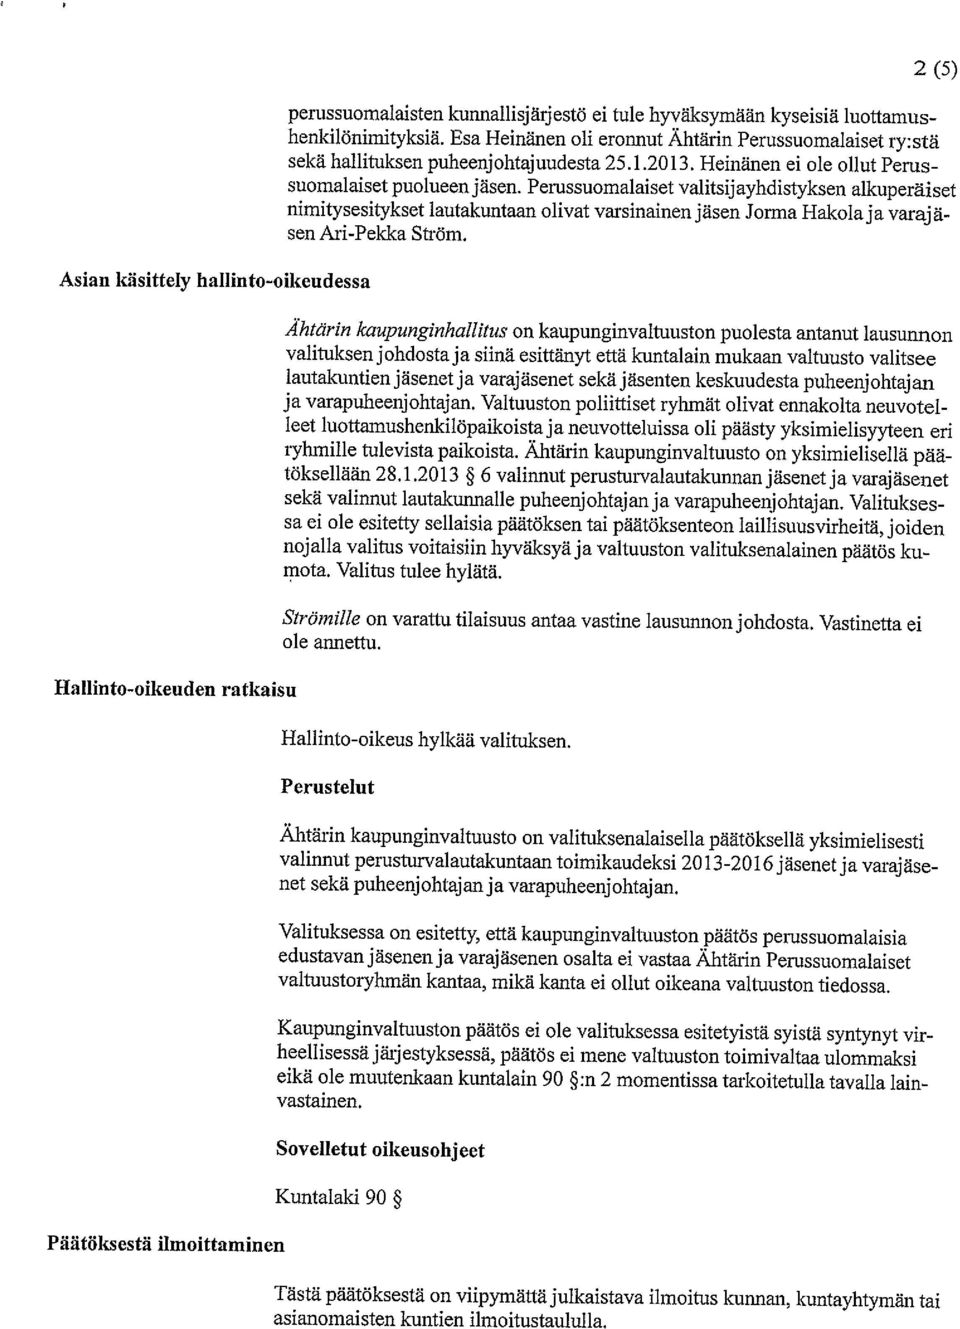 Perussuomalaiset valitsij ayhdistyksen alkuperäiset nimitysesitykset lautakuntaan olivat varsinainen jäsen Jorma Hakola ja varaj ä sen Ari-Pekka Ström.